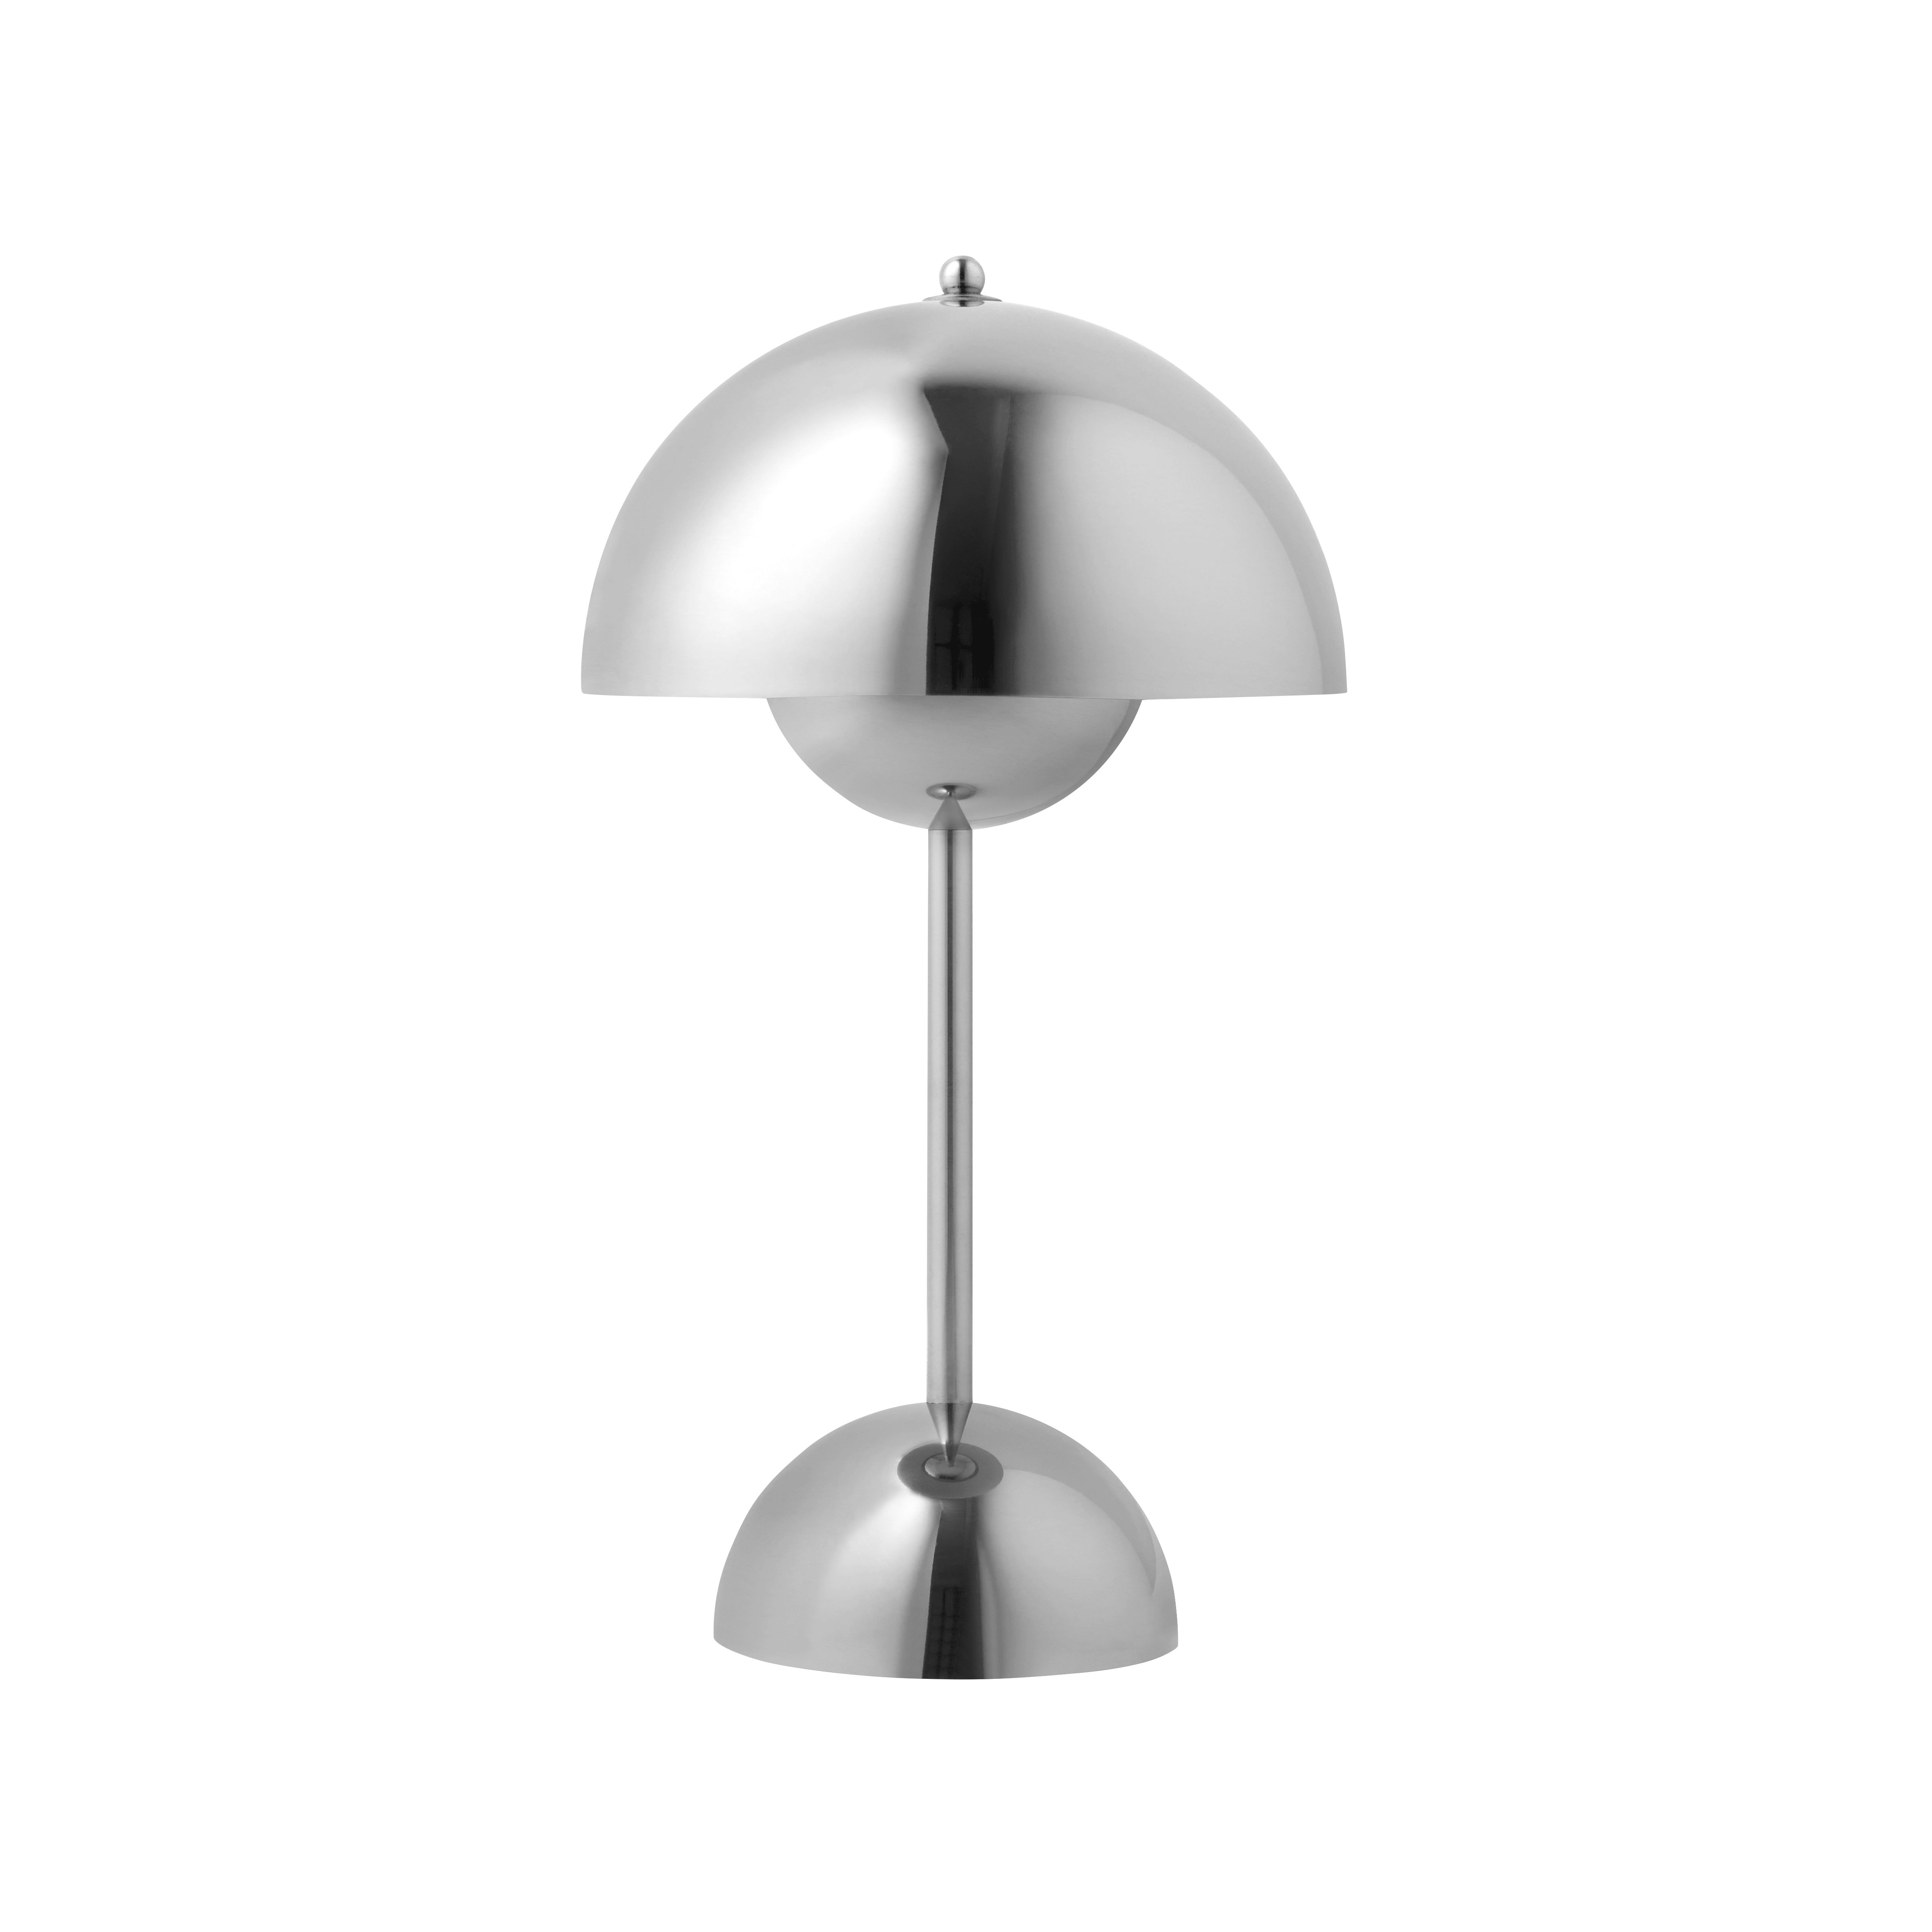 Lampe sans fil rechargeable Flowerpot VP9 &tradition - argent métal